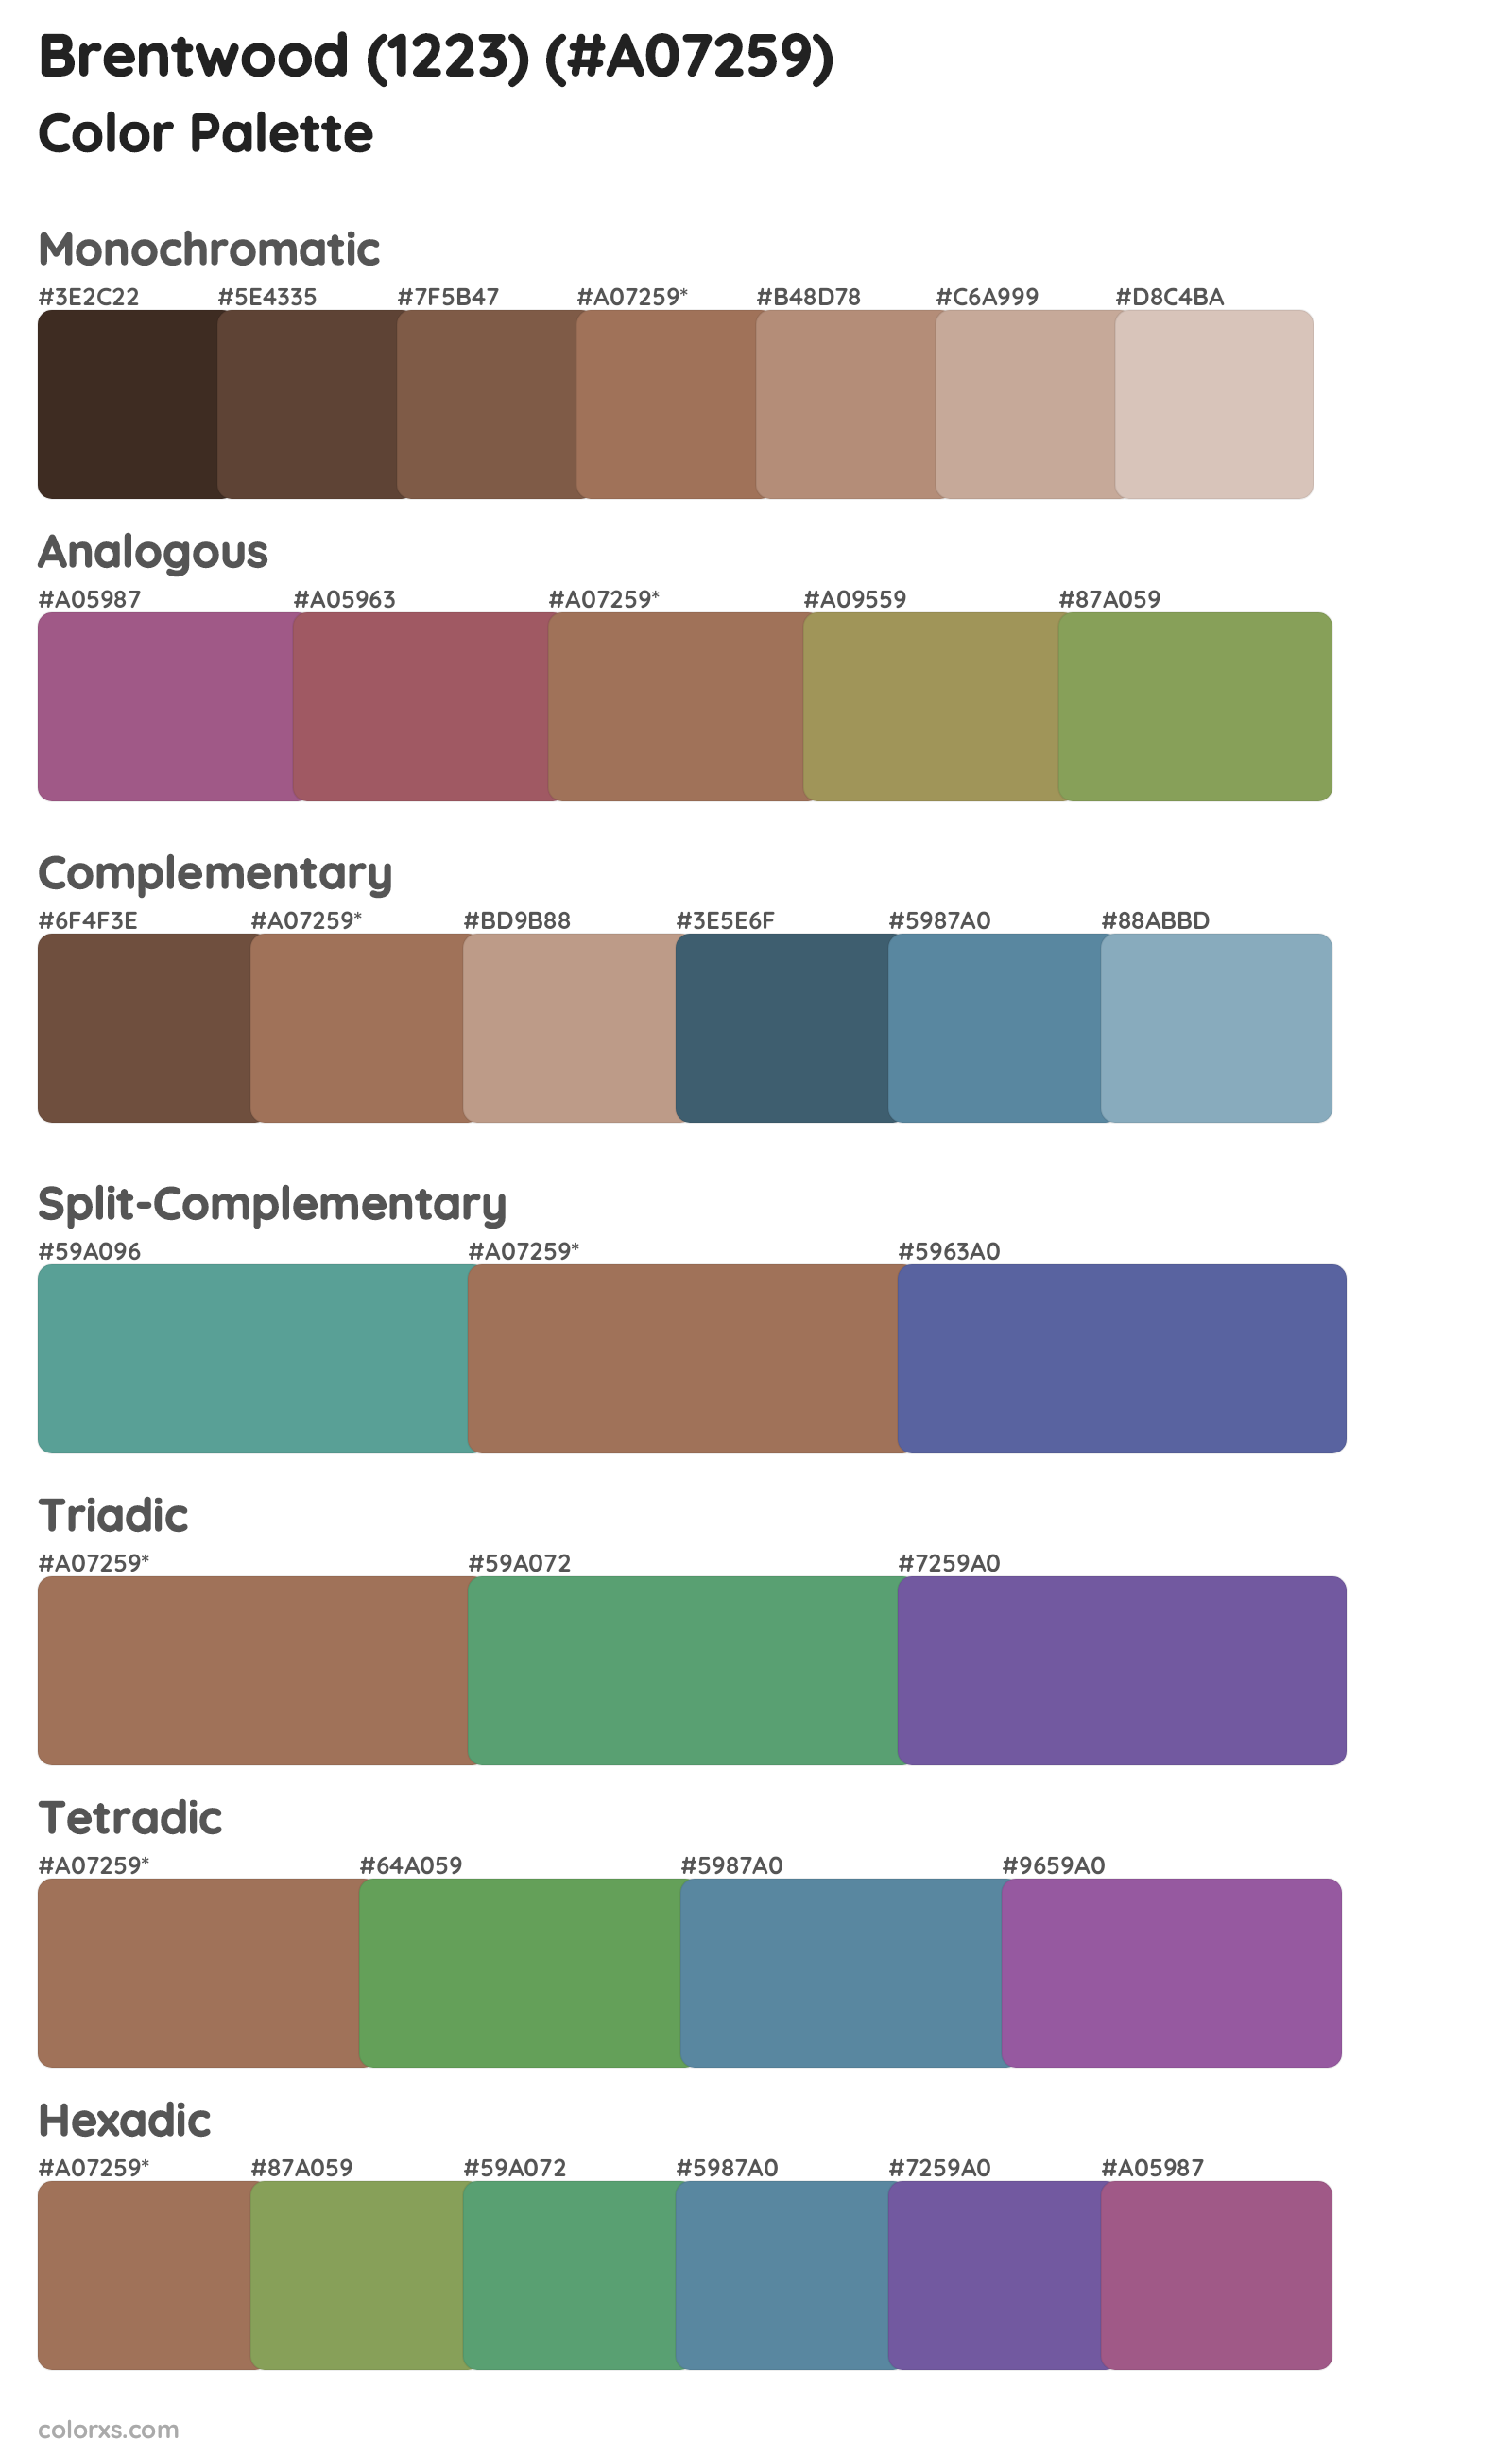 Brentwood (1223) Color Scheme Palettes